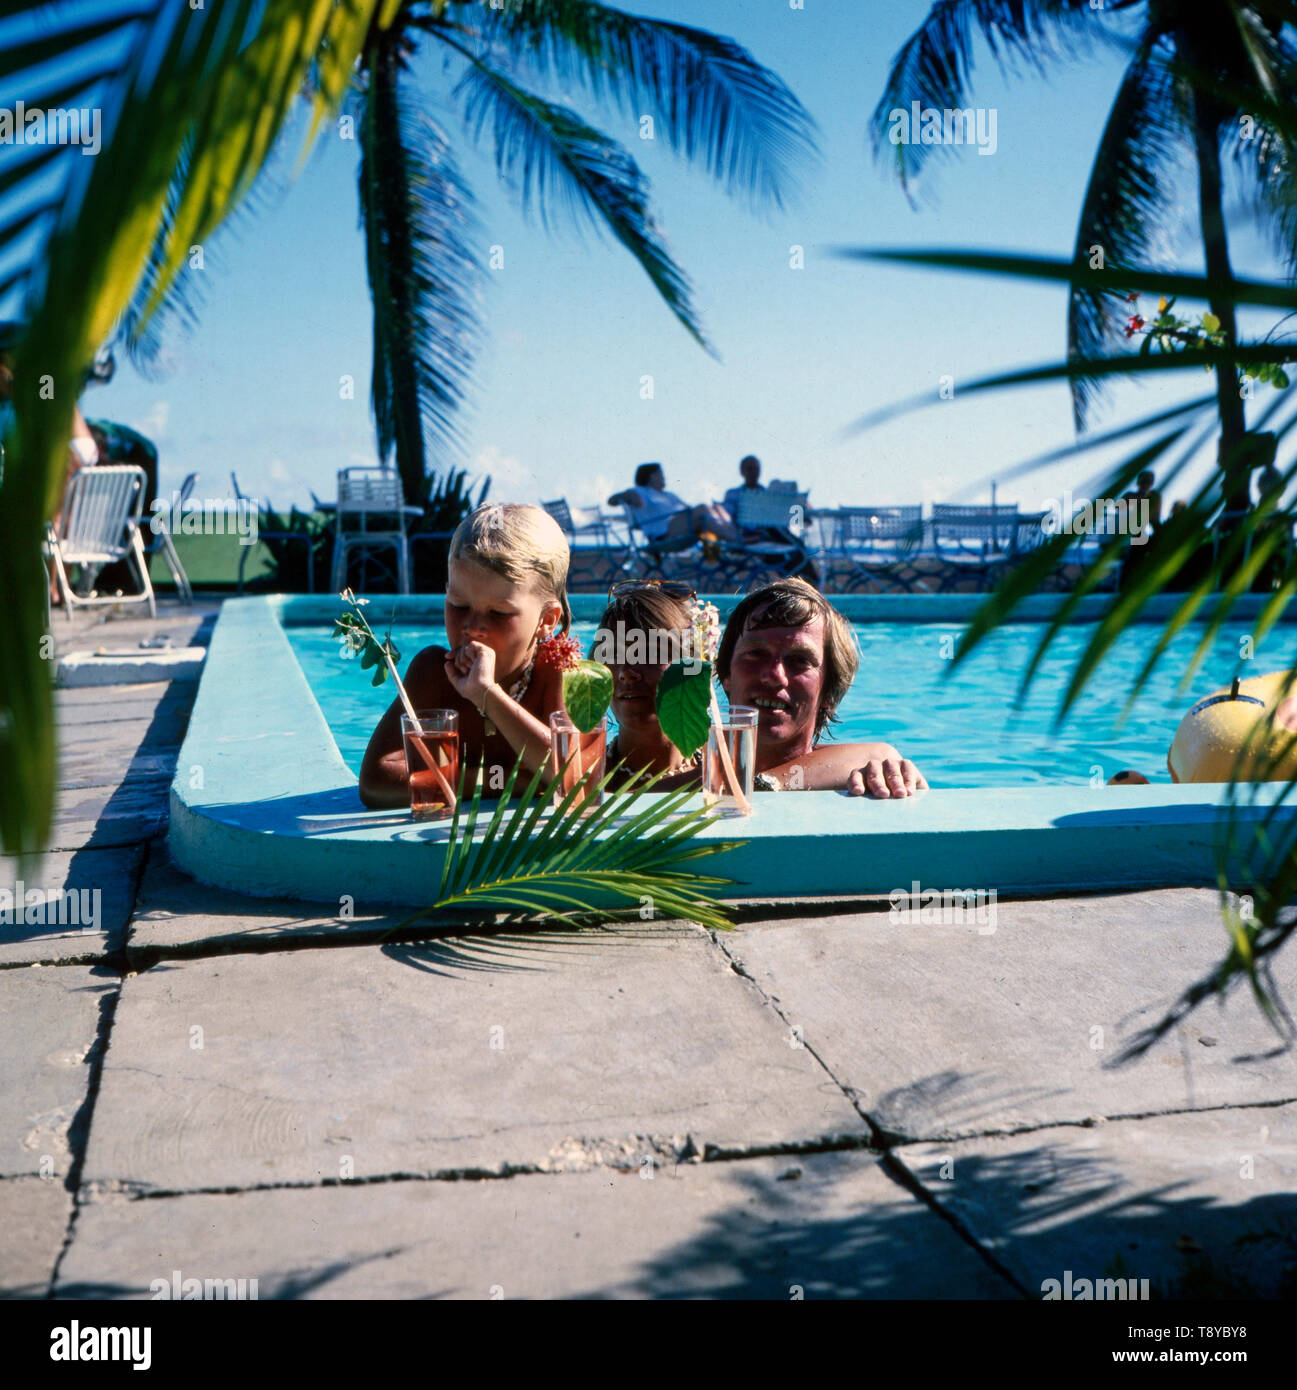 Prinz Leopold von Bayern und seine Ehefrau Ursula und ein gemeinsames tipo entspannen gemeinsam in einem Schwimmbecken während eines Urlaubs auf den Bahamas, ca. 1980er Jahre. Il principe Leopoldo di Baviera e di sua moglie Ursula e un bambino insieme rilassatevi in piscina durante una vacanza alle Bahamas, circa ottanta. Foto Stock